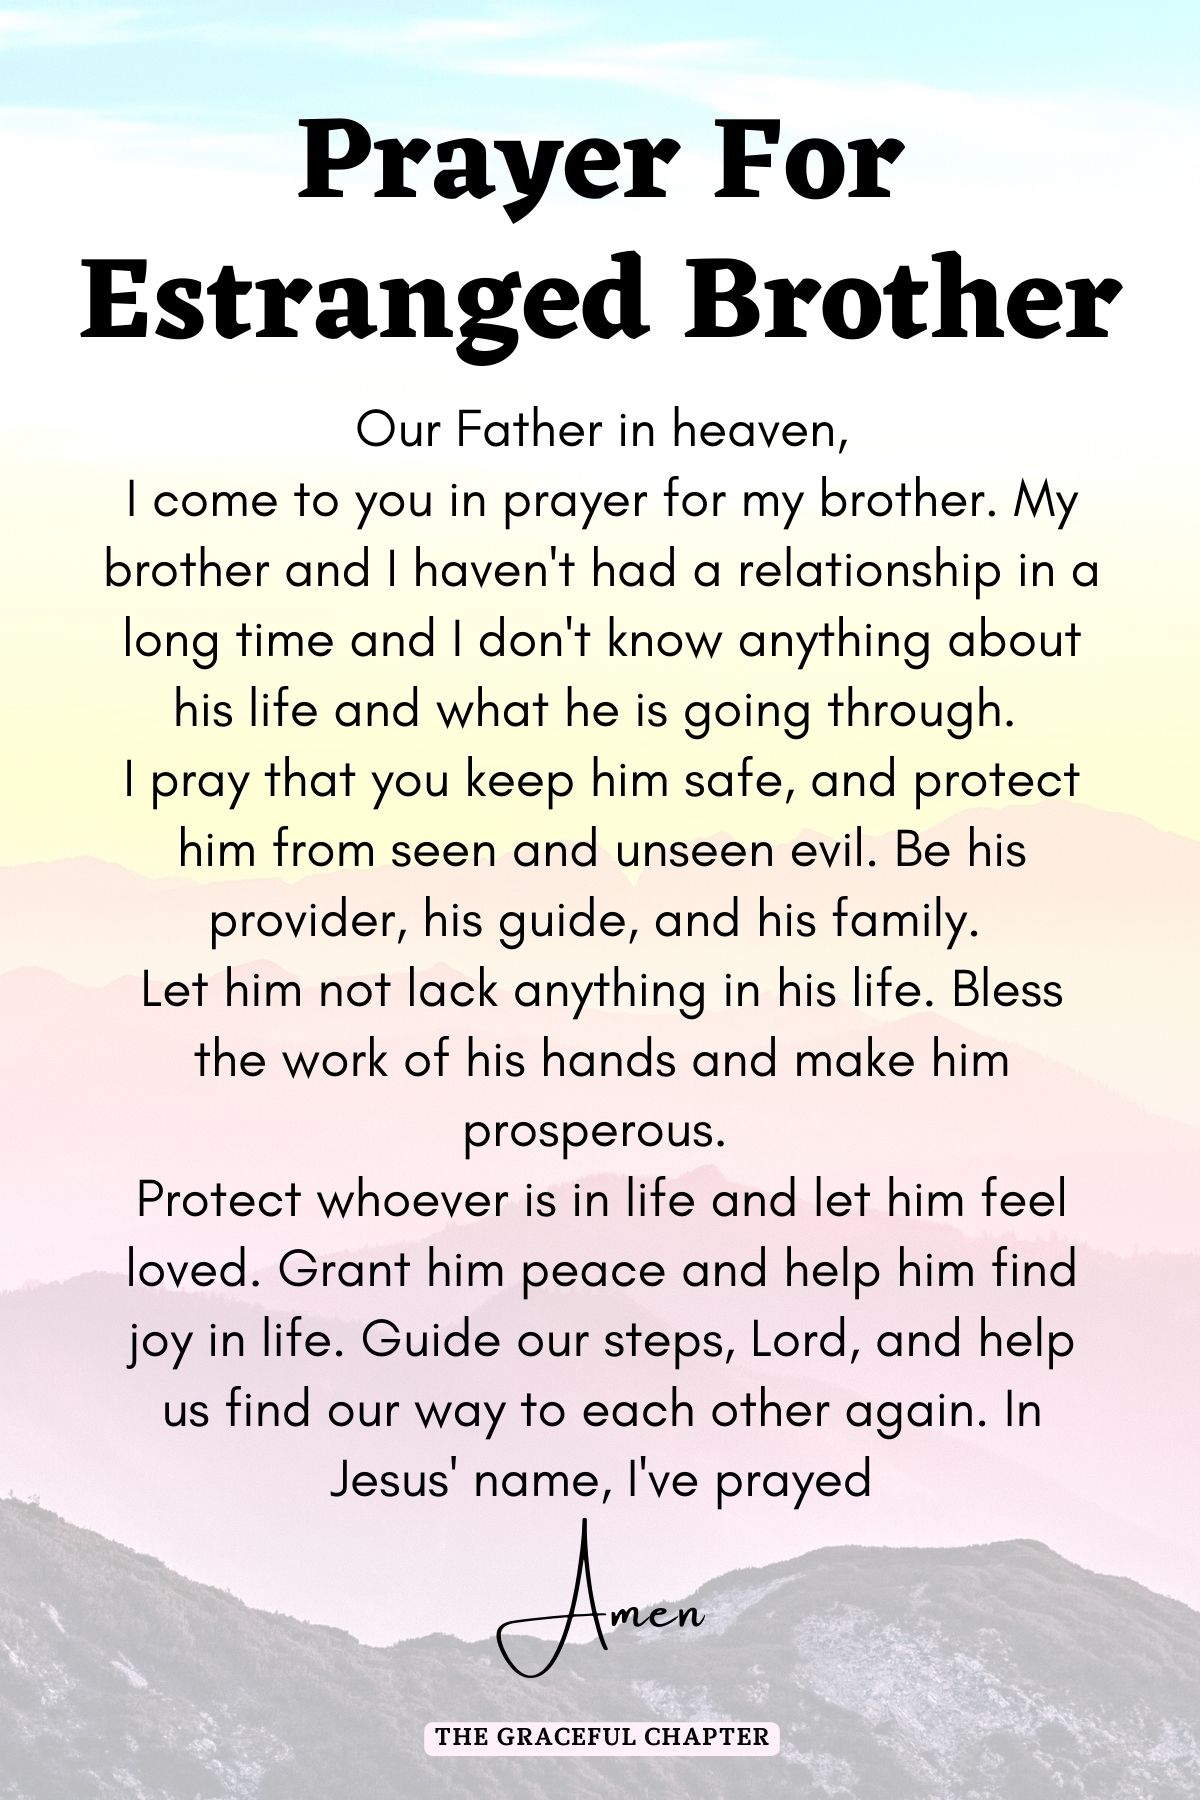 Prayer for estranged brother